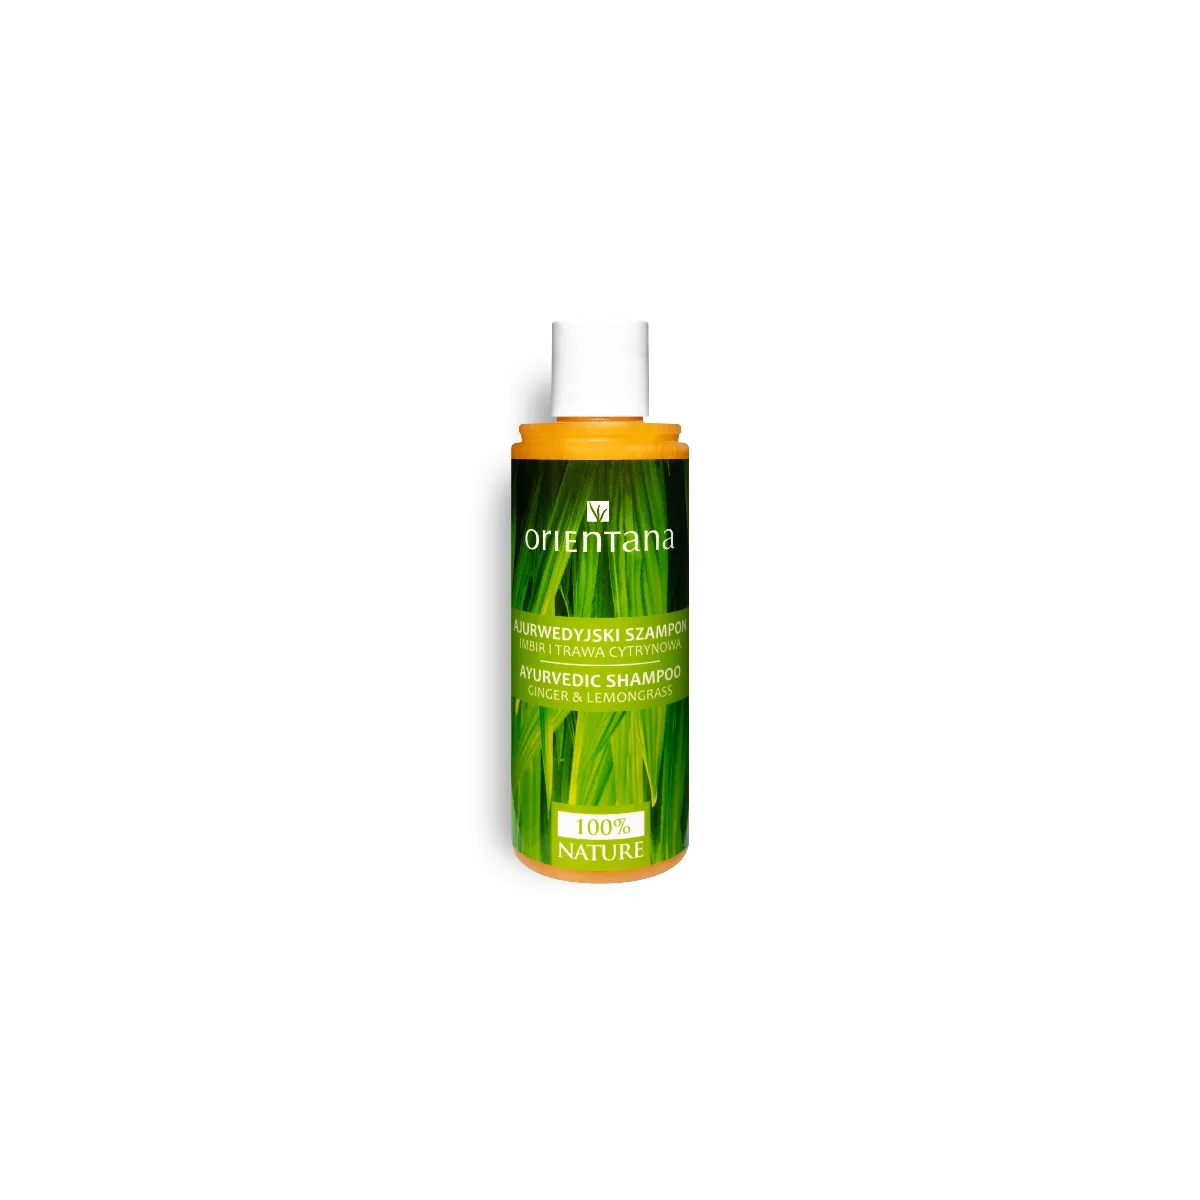 Orientana, ajurwedyjski szampon, imbir i trawa cytrynowa, 210 ml